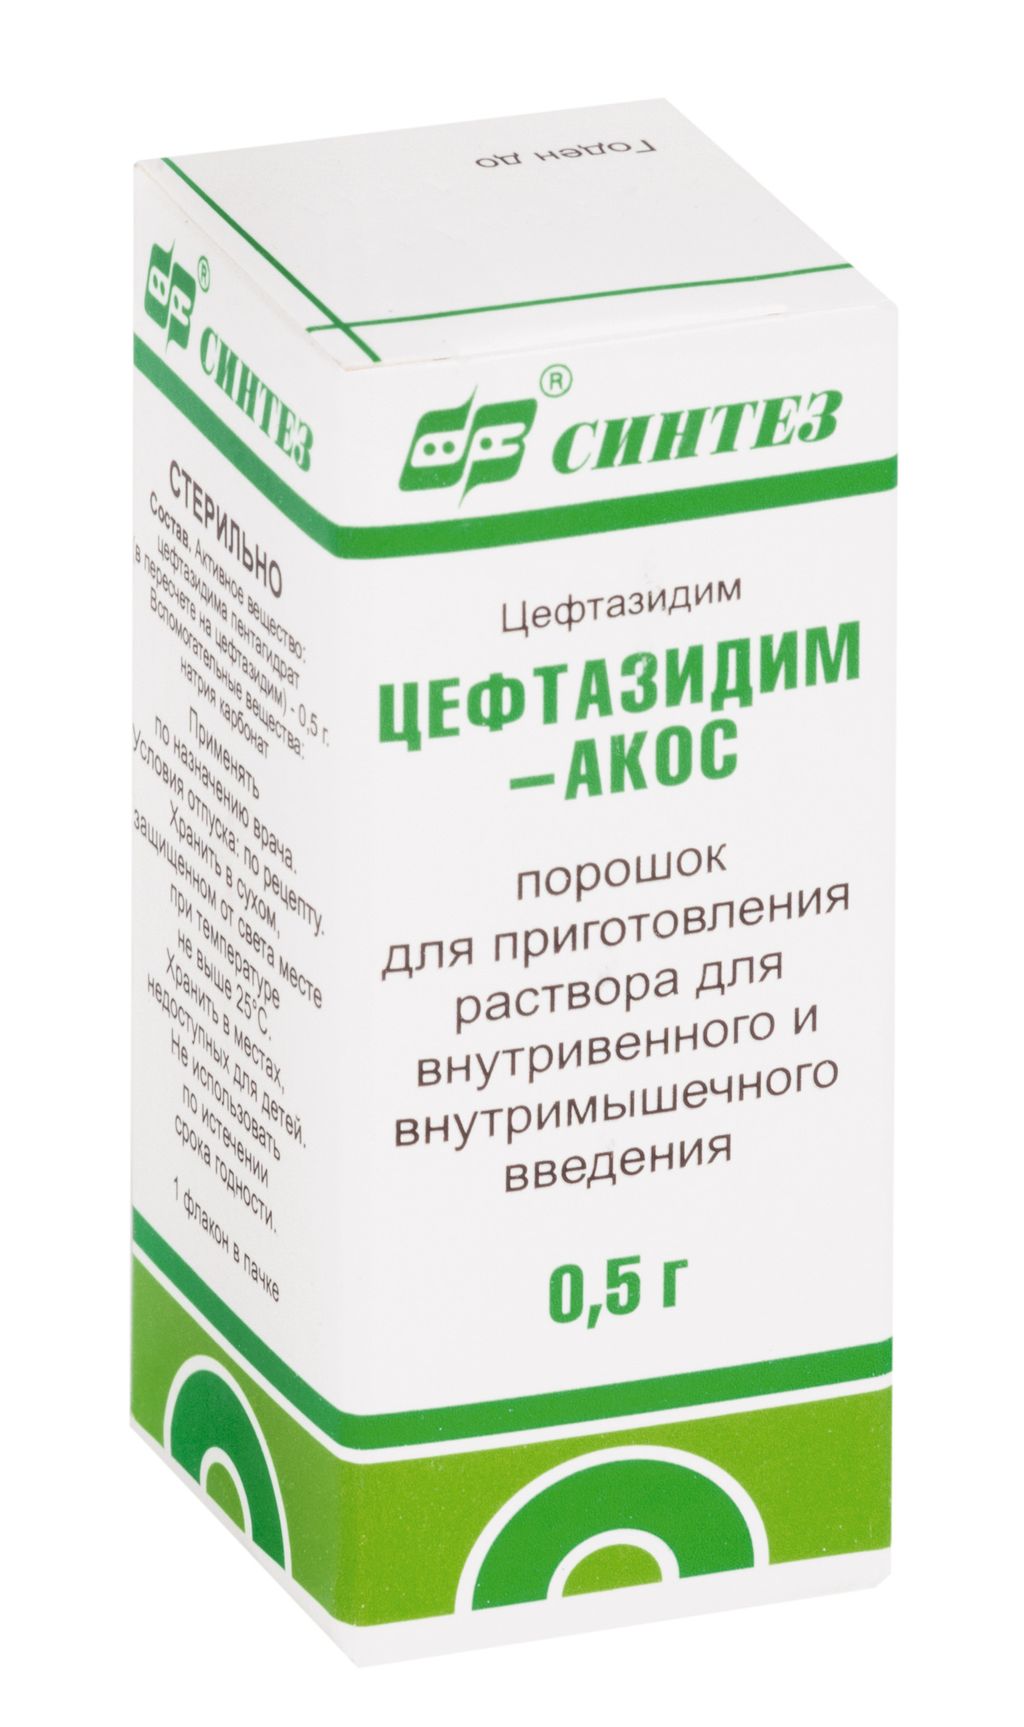 Цефтазидим-АКОС, 0.5 г, порошок для приготовления раствора для внутривенного и внутримышечного введения, 10 мл, 1 шт.